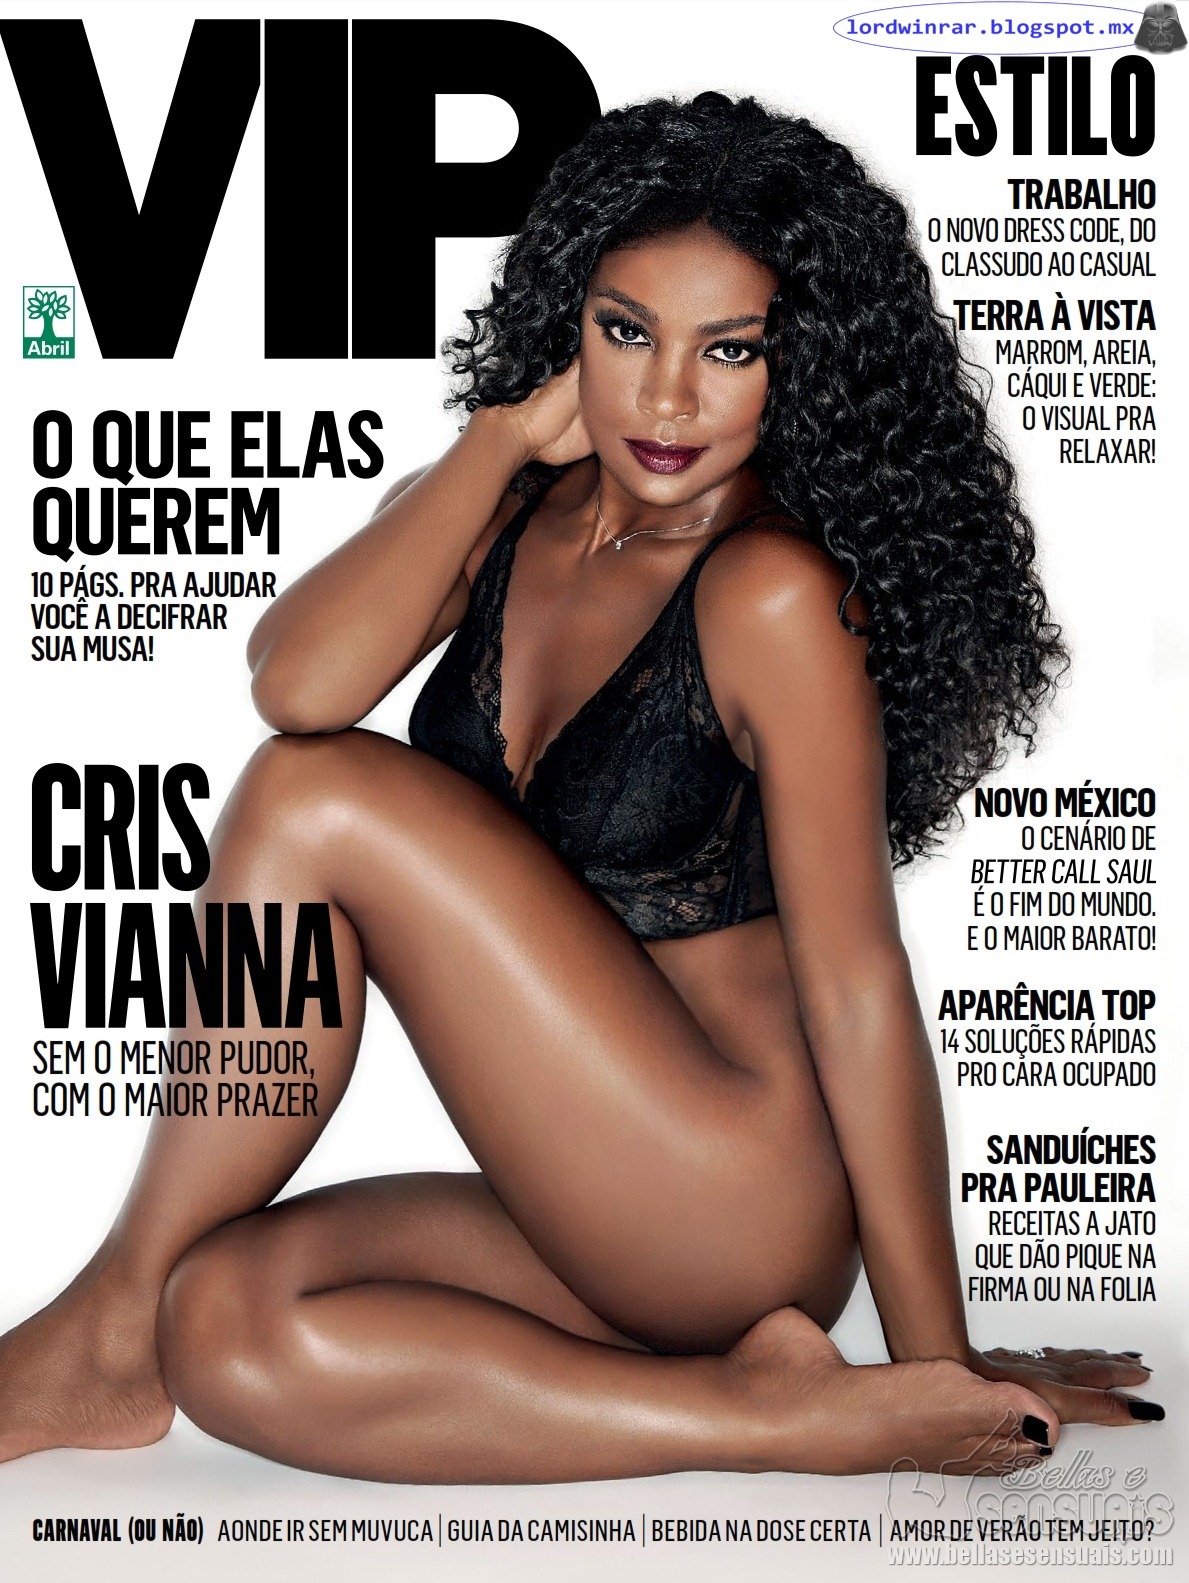 Cris Vianna - Vip 2016 Febrero (19 Fotos HQ)Cris Vianna en la revista Vip 2016 Febrero.